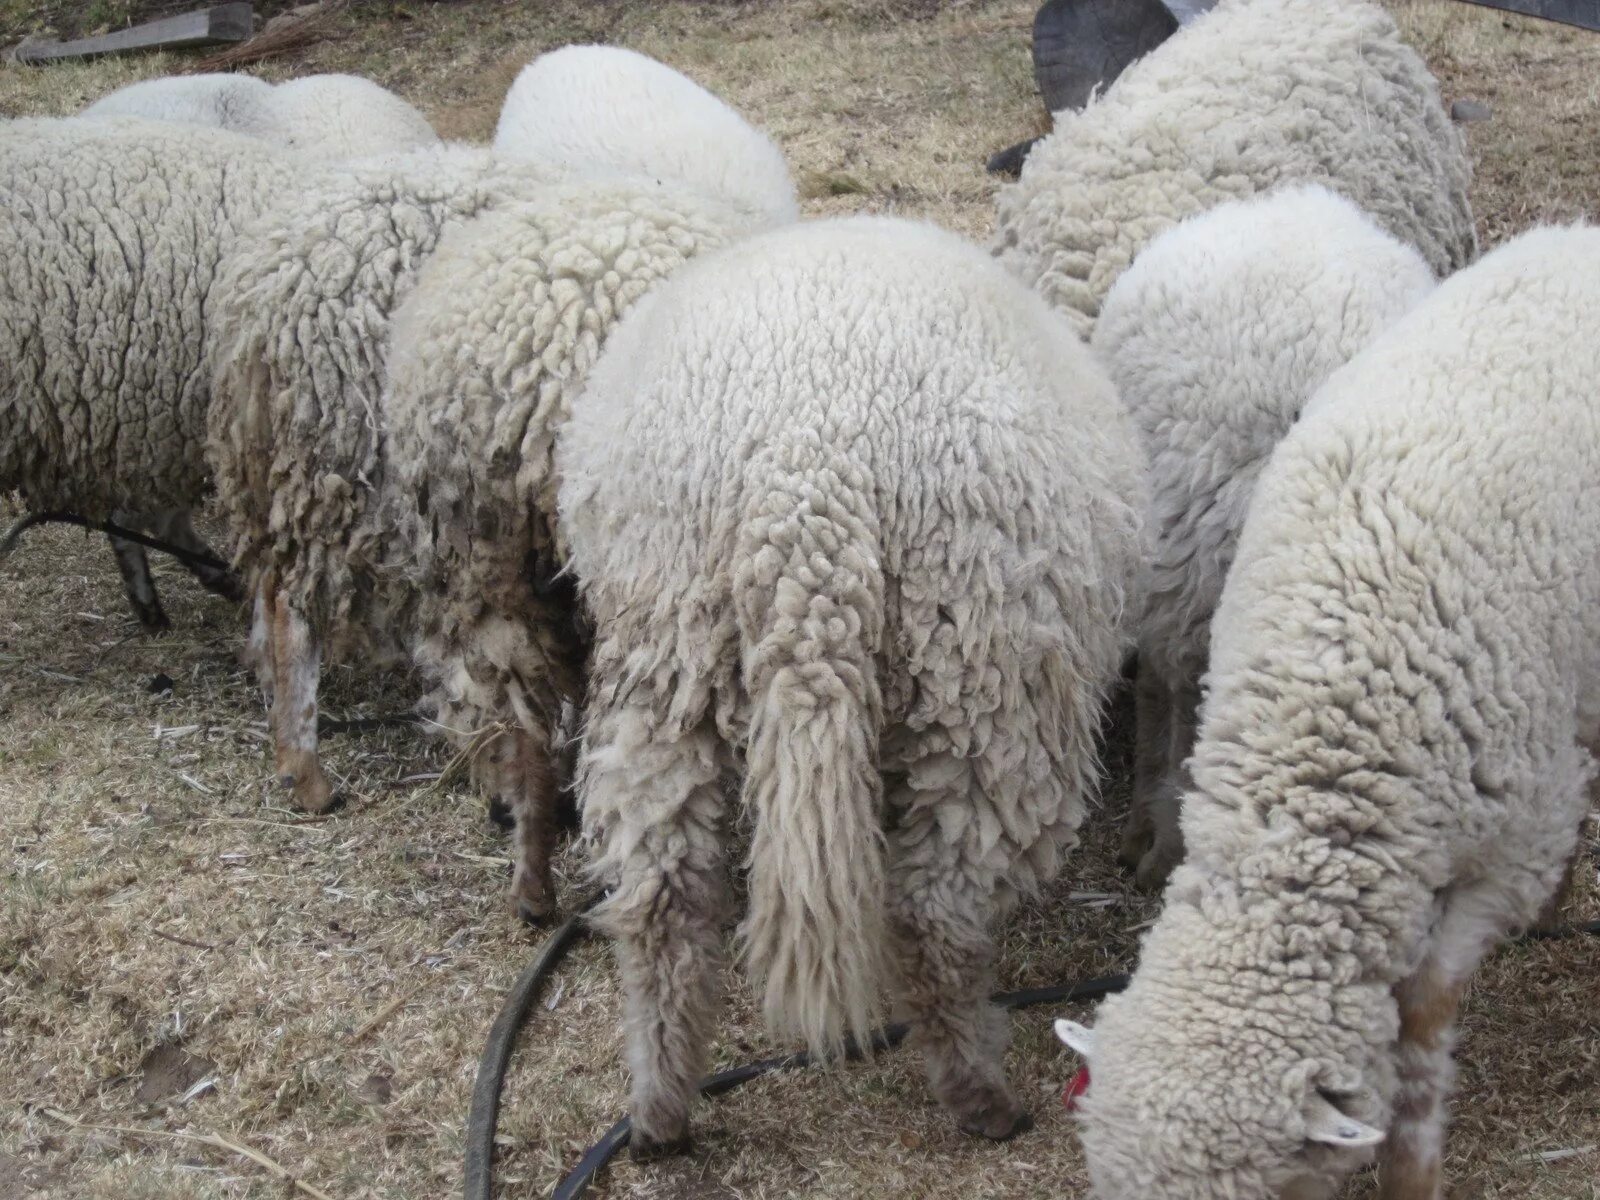 У барана спереди у араба. Хвост барана. Порода овец с длинным хвостом.